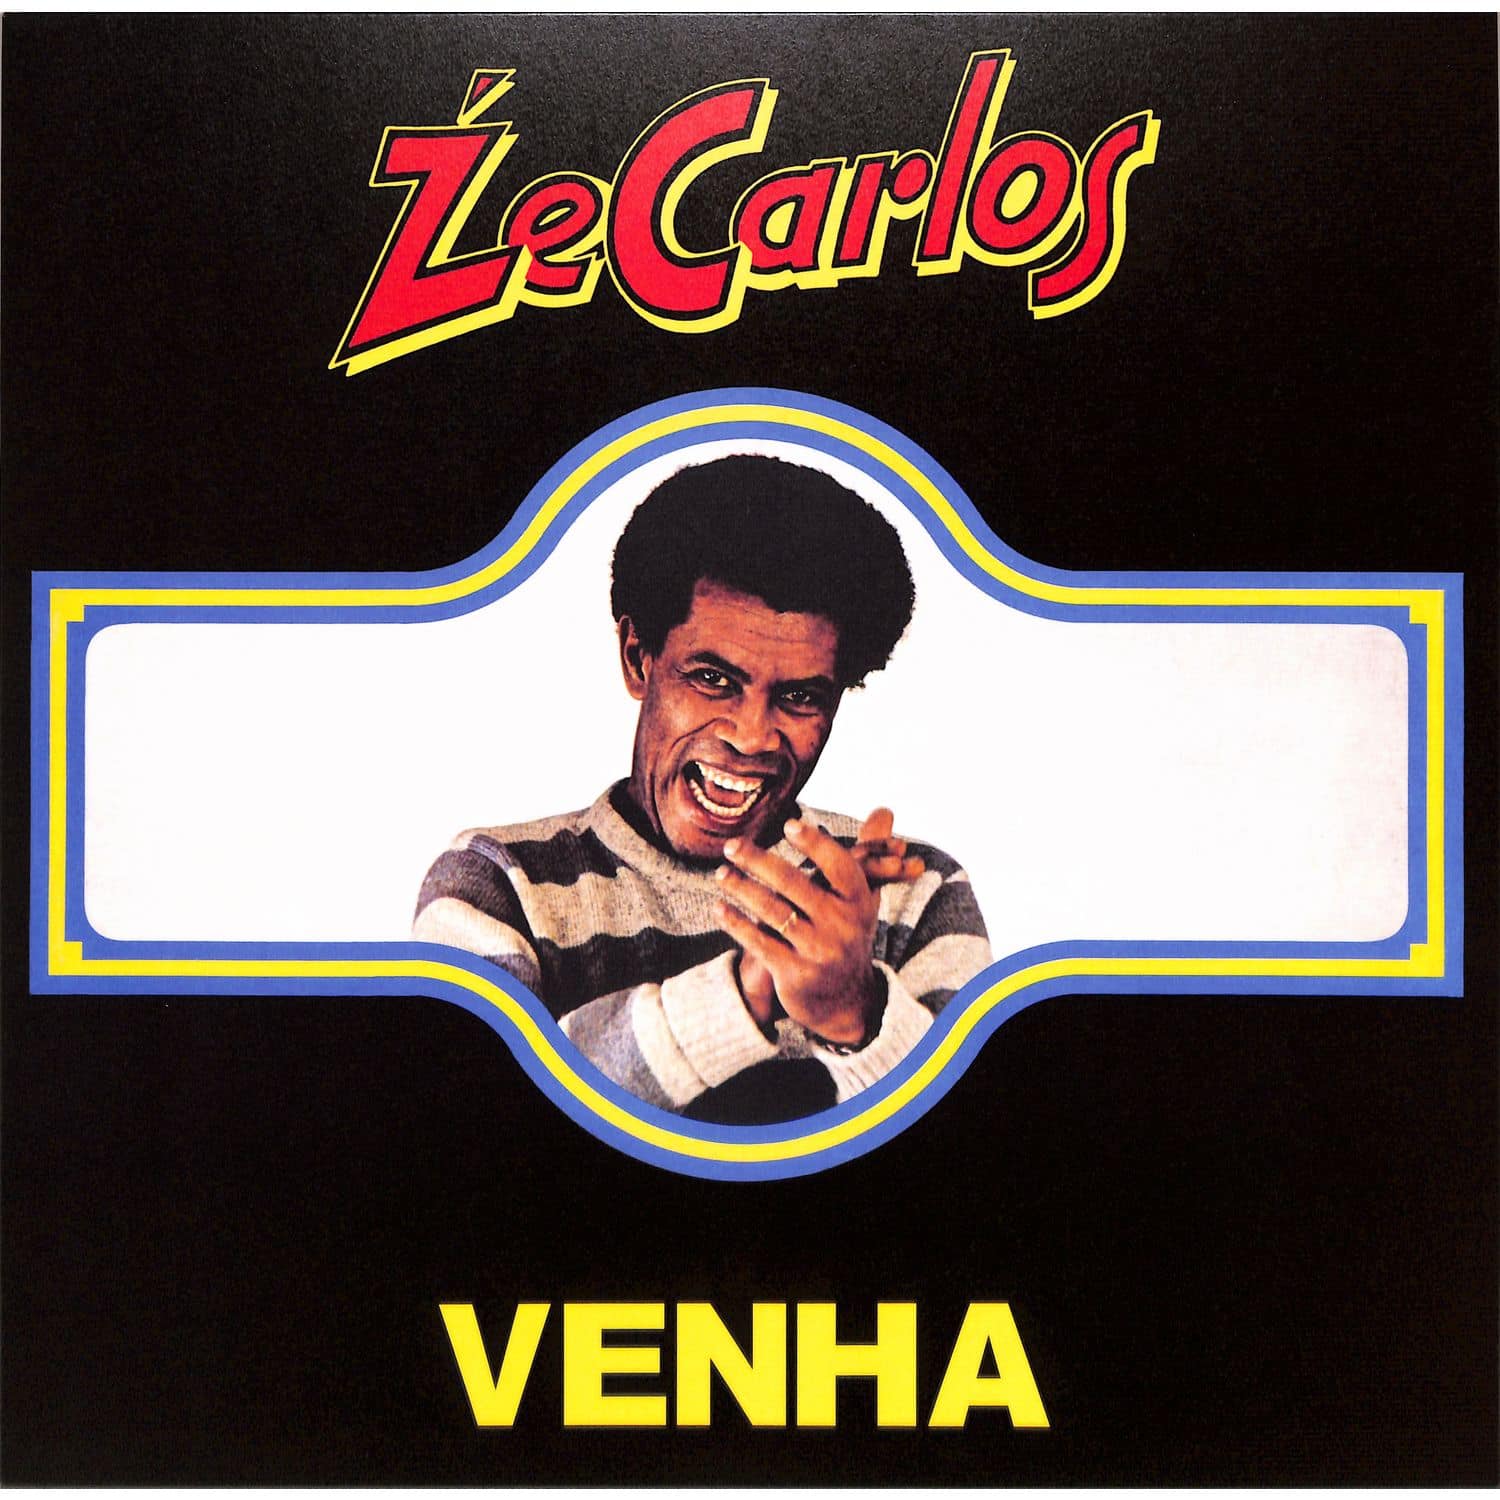 Ze Carlos - VENHA